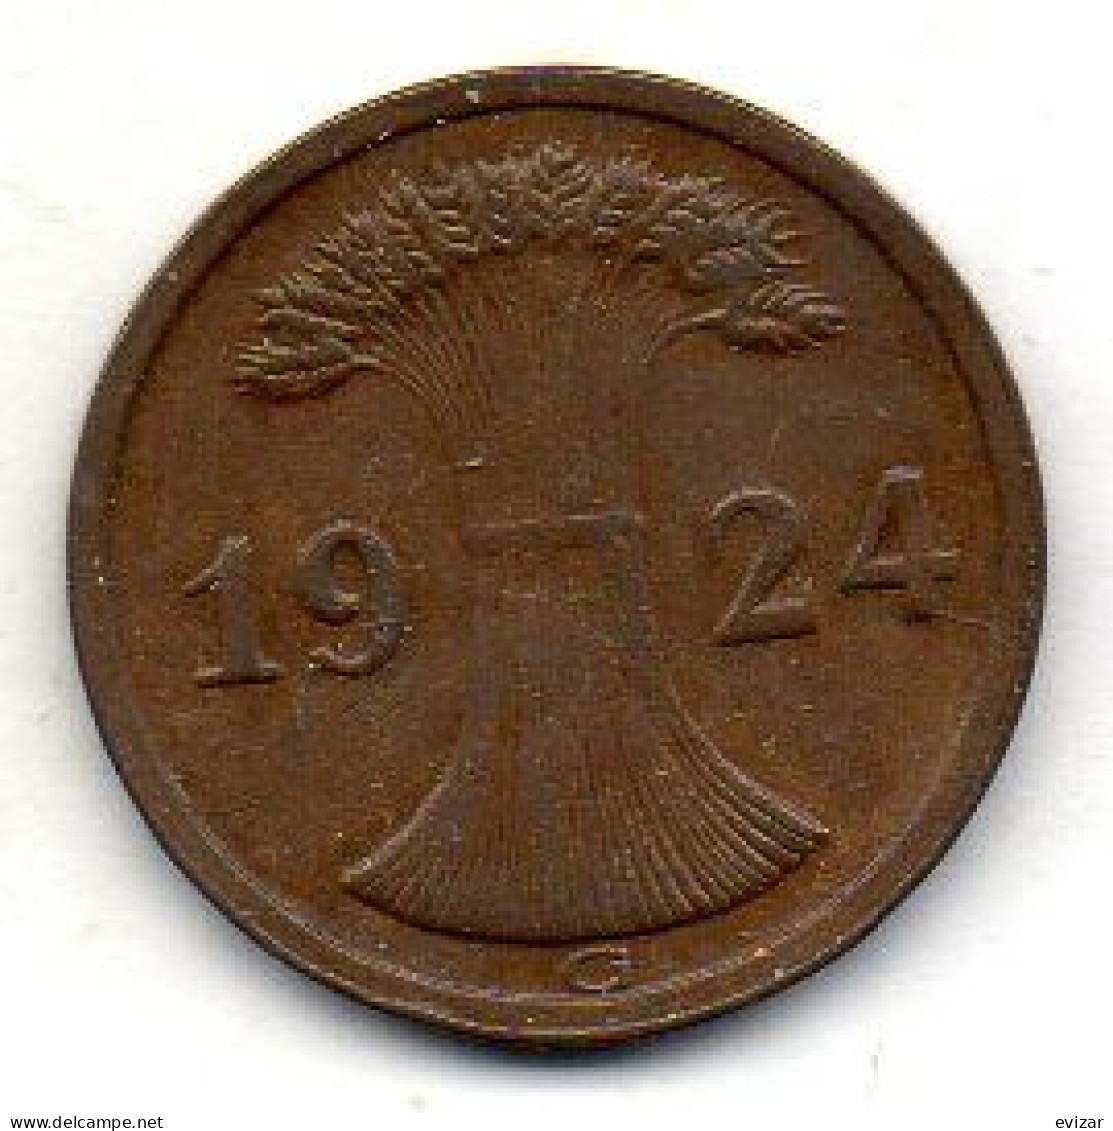 GERMANY - WEIMAR REPUBLIC, 2 Reichs Pfennig, Bronze, Year 1924-G, KM # 38 - 2 Rentenpfennig & 2 Reichspfennig